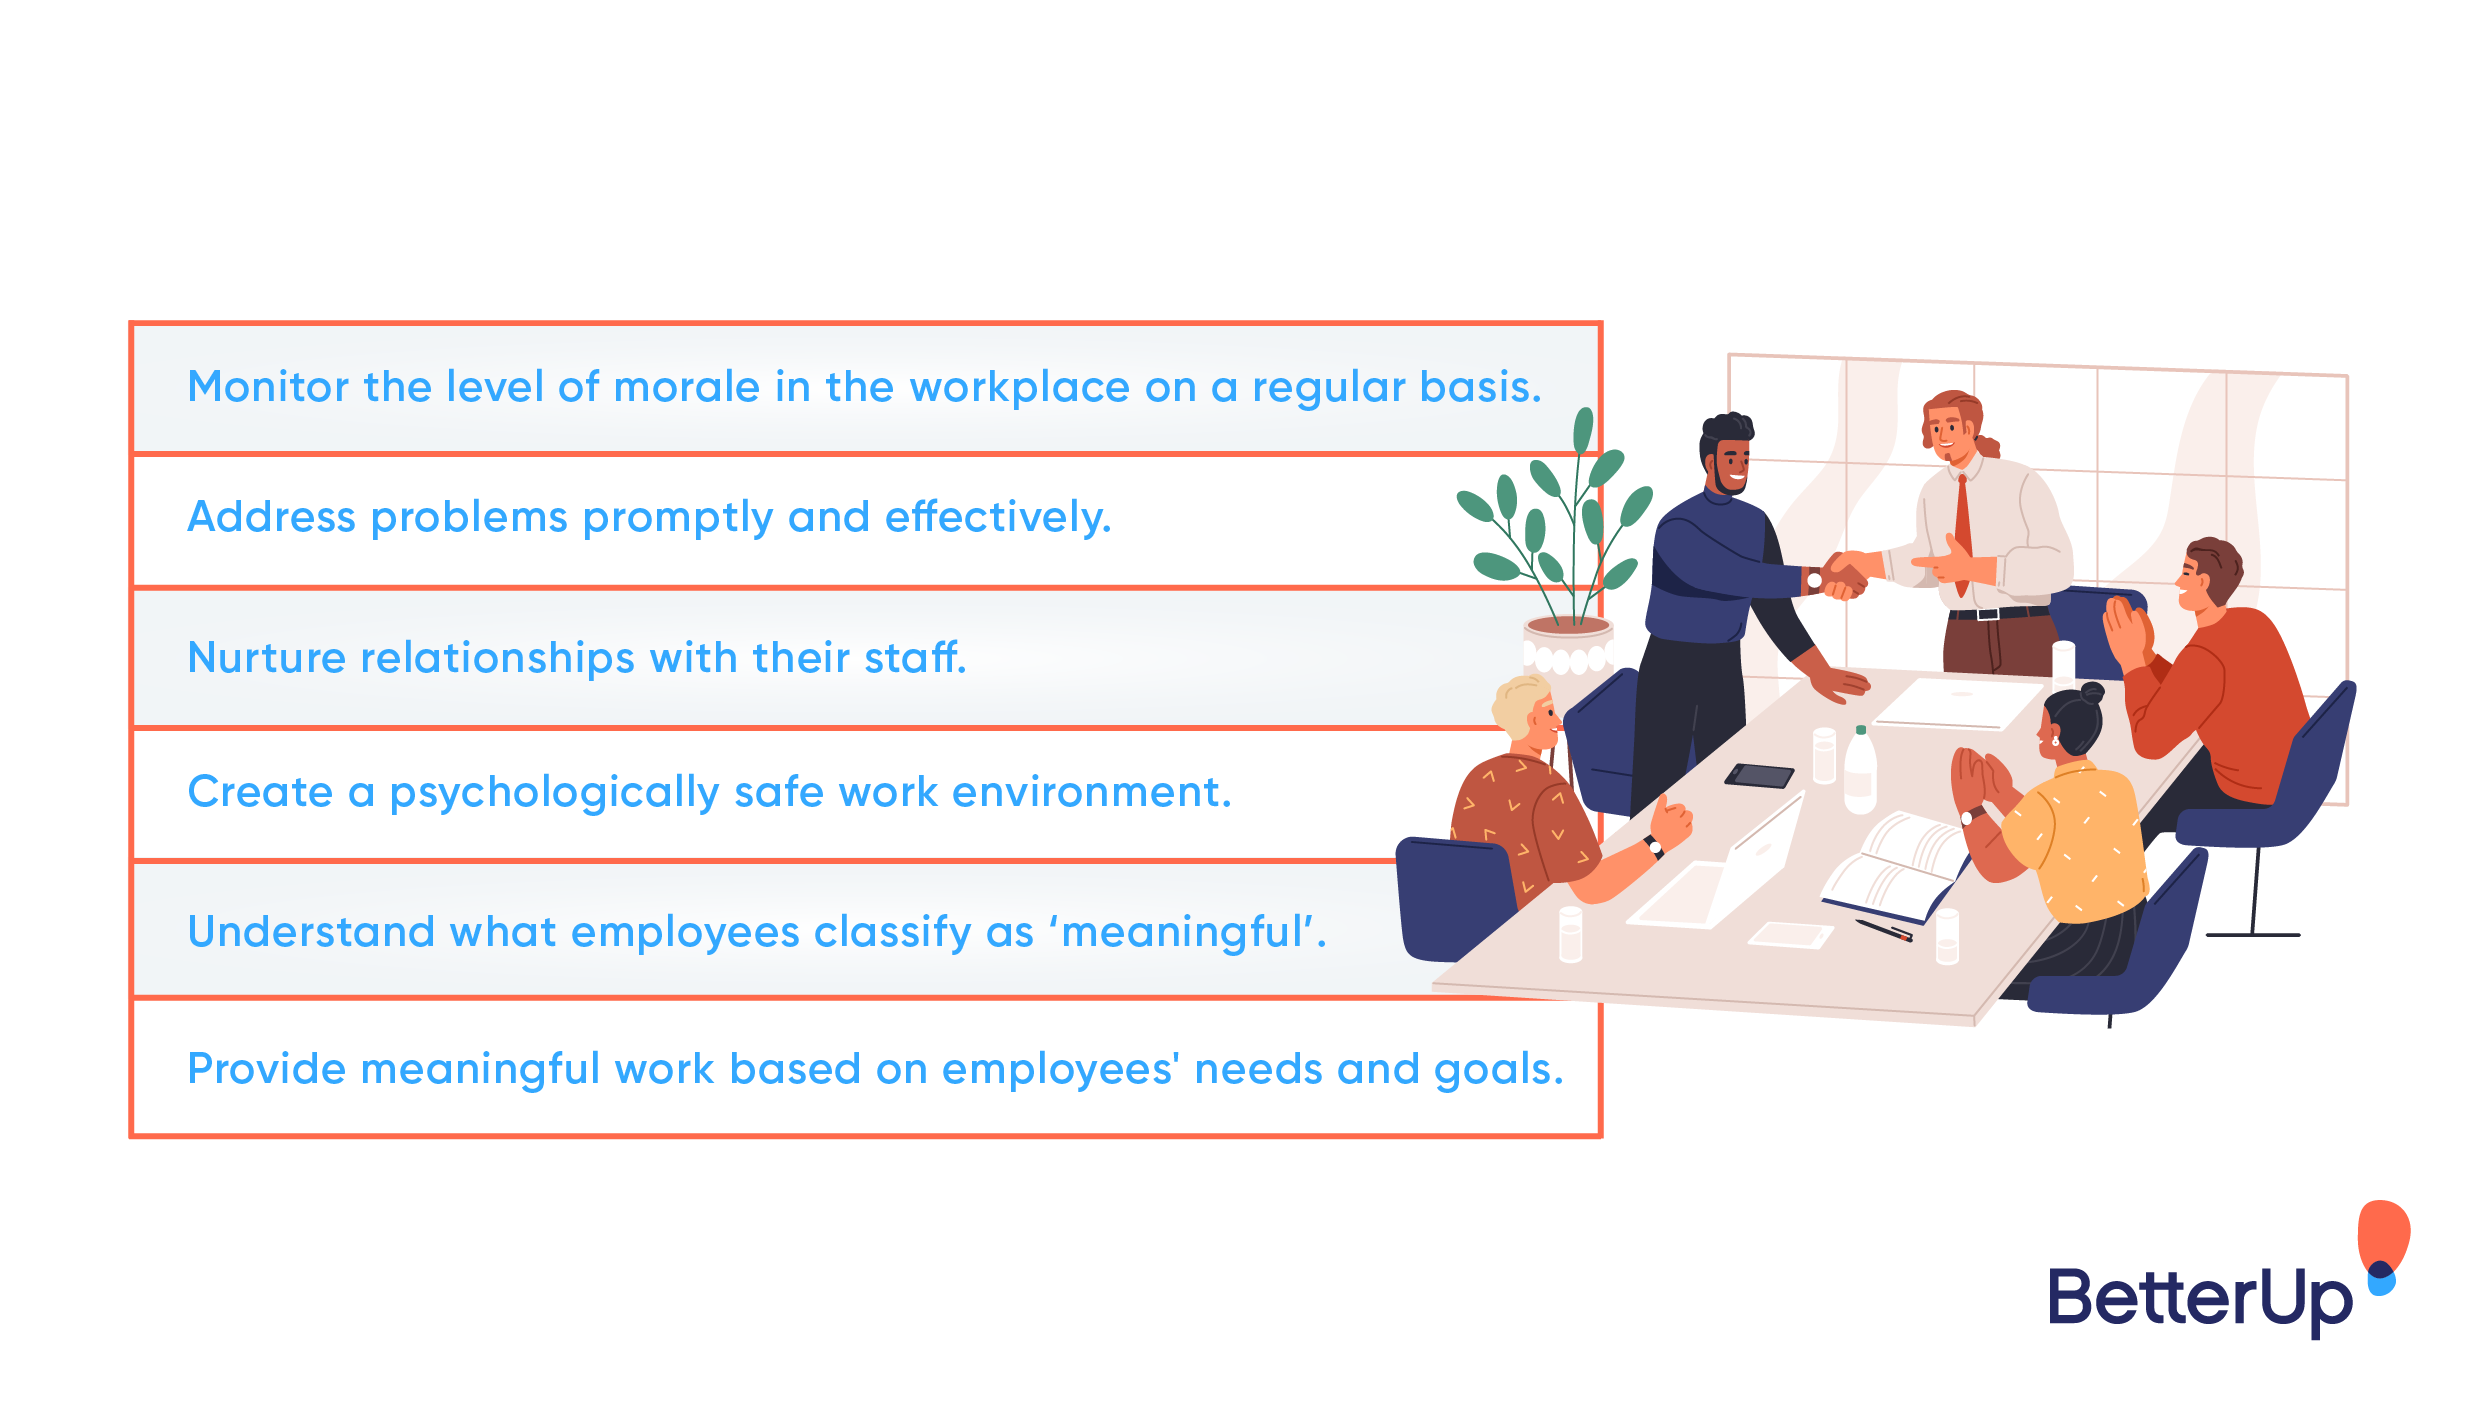 Las 7 formas infalibles de aumentar la moral de los empleados